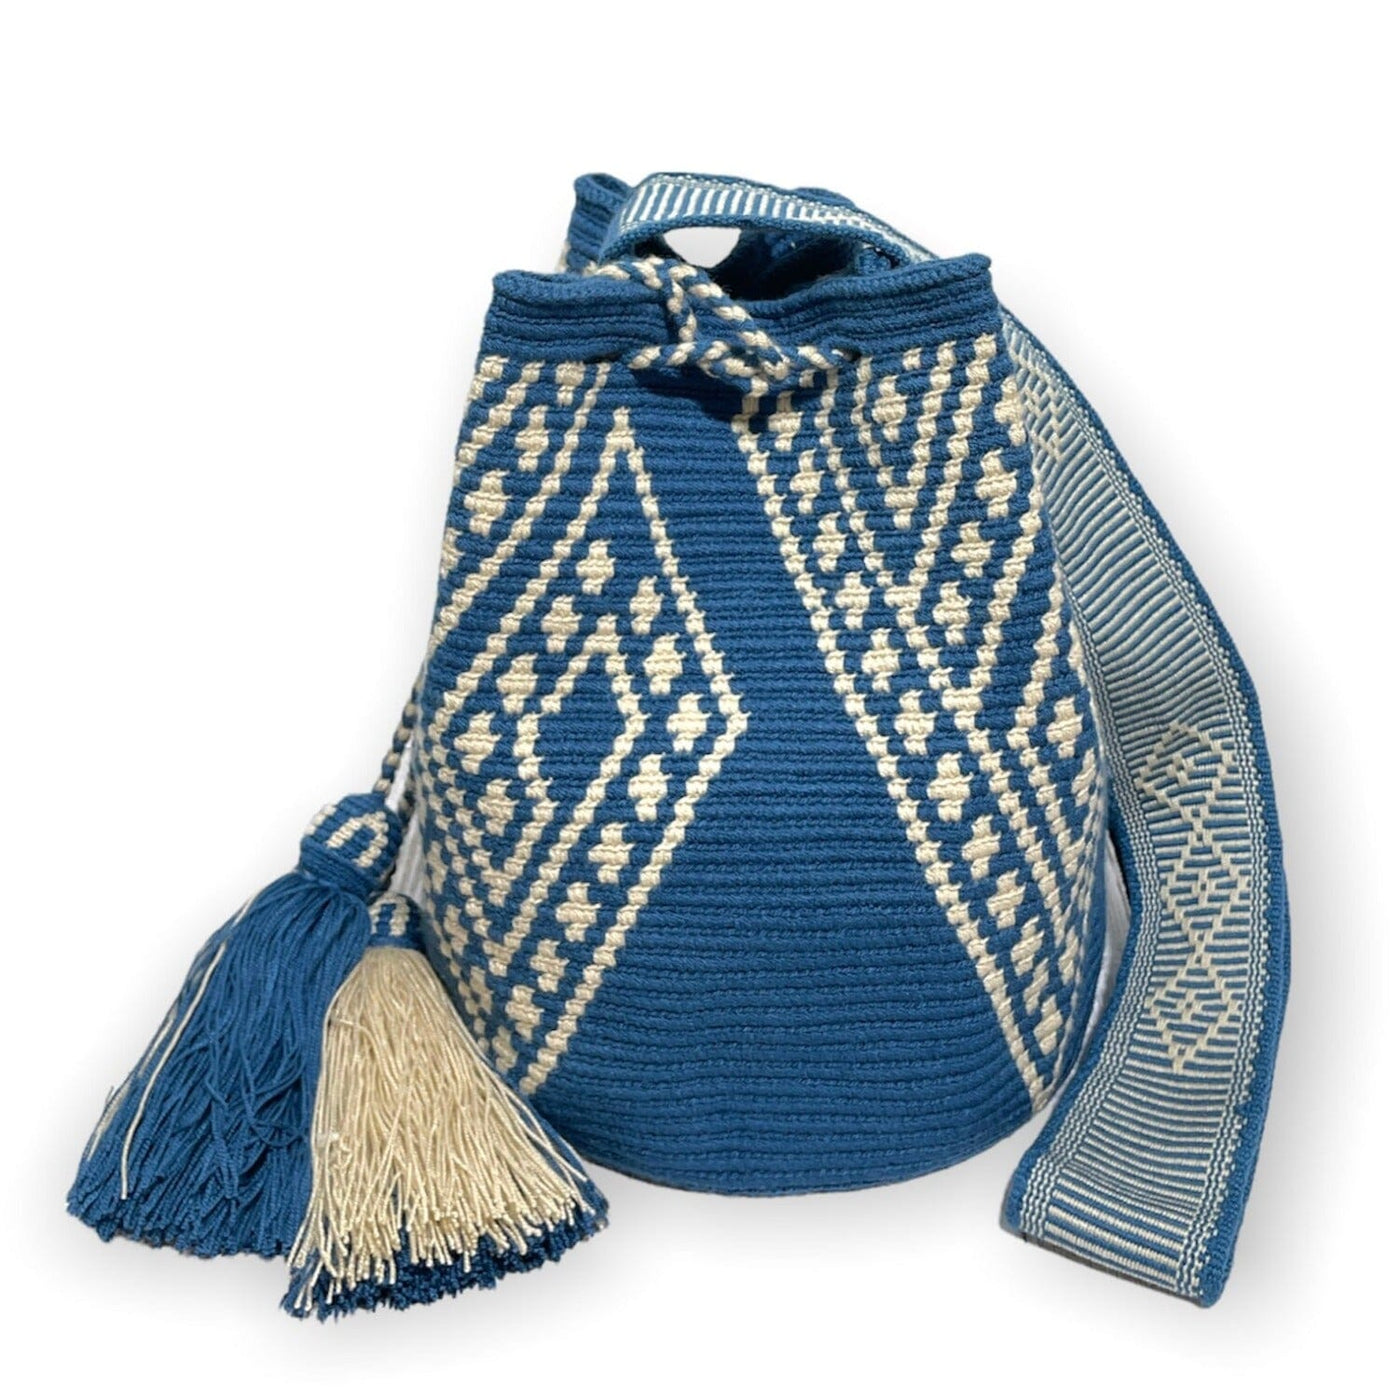  Cute Blue Crochet Bags | Crossbody bohemian handbags